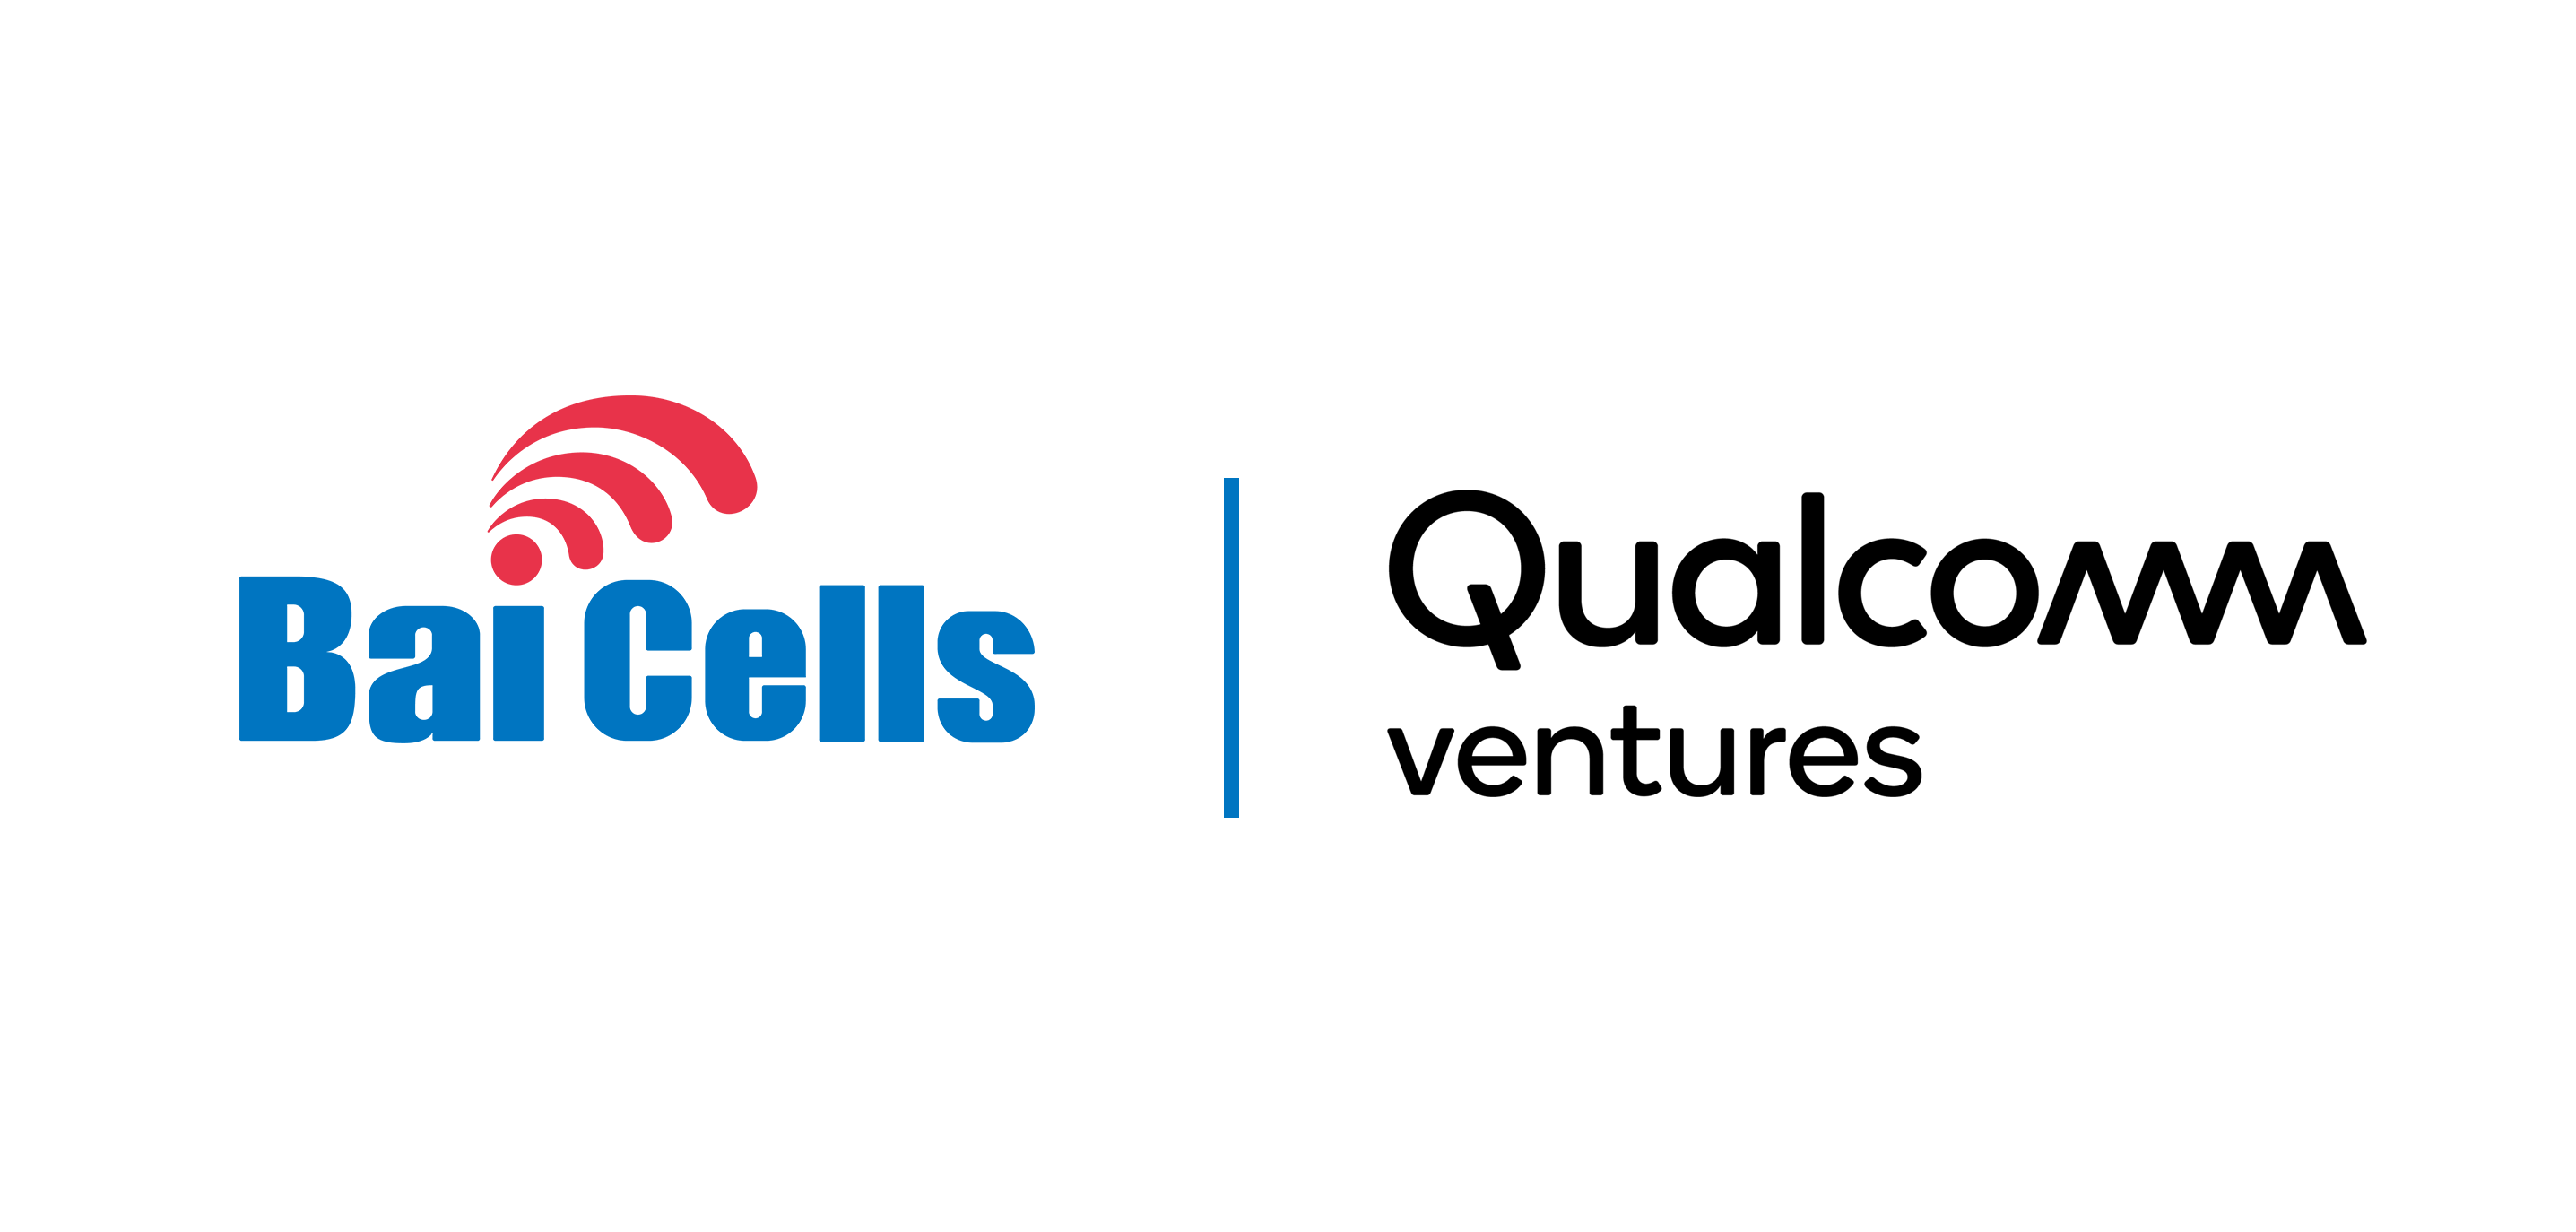 Qualcomm Ventures Logo - Qualcomm Ventures Announces Investment in Baicells for 5G – LTE ...